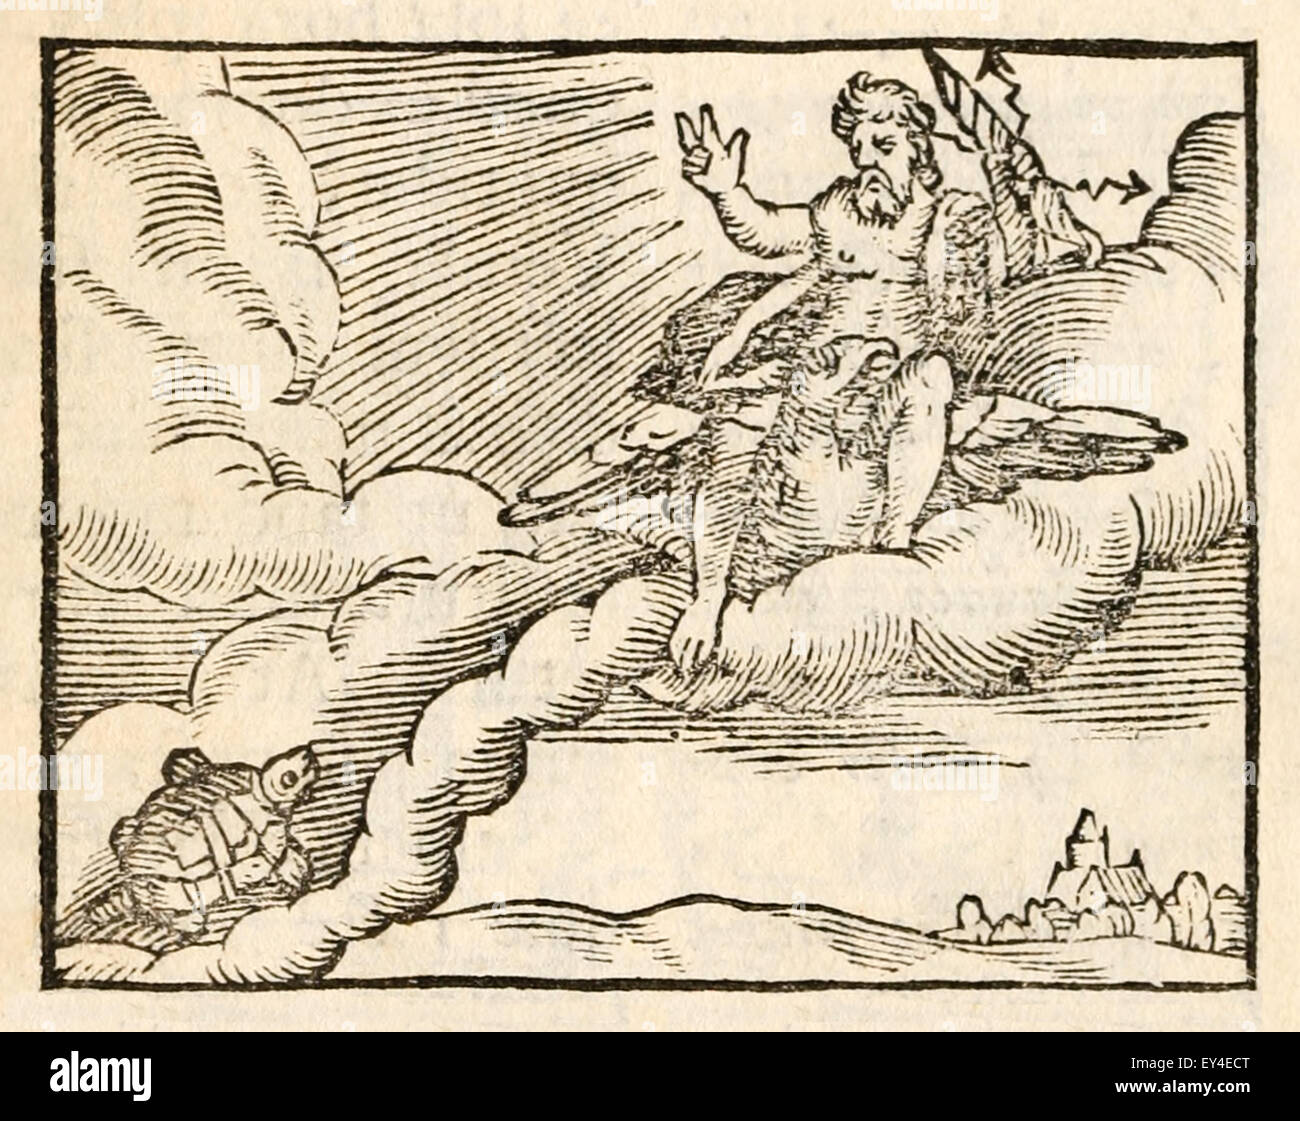 ' La tortue et les oiseaux" 17e siècle gravure sur bois illustrant les Fables d'Ésope. Voir la description pour plus d'informations. Banque D'Images